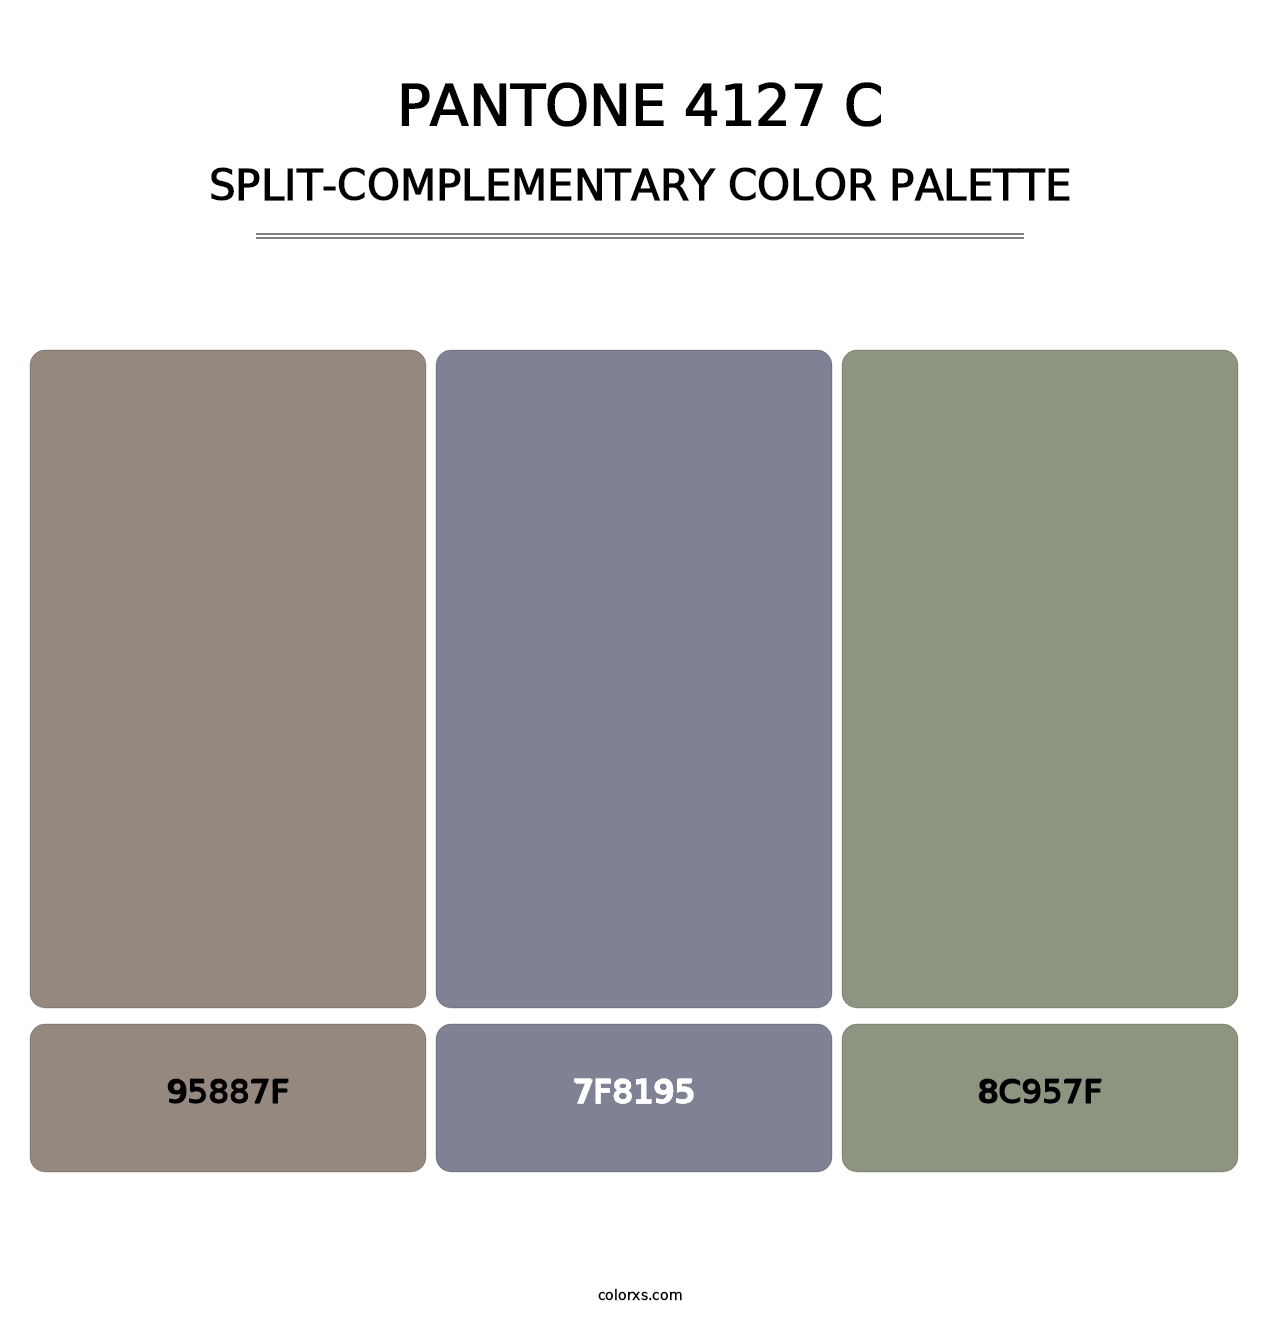 PANTONE 4127 C - Split-Complementary Color Palette